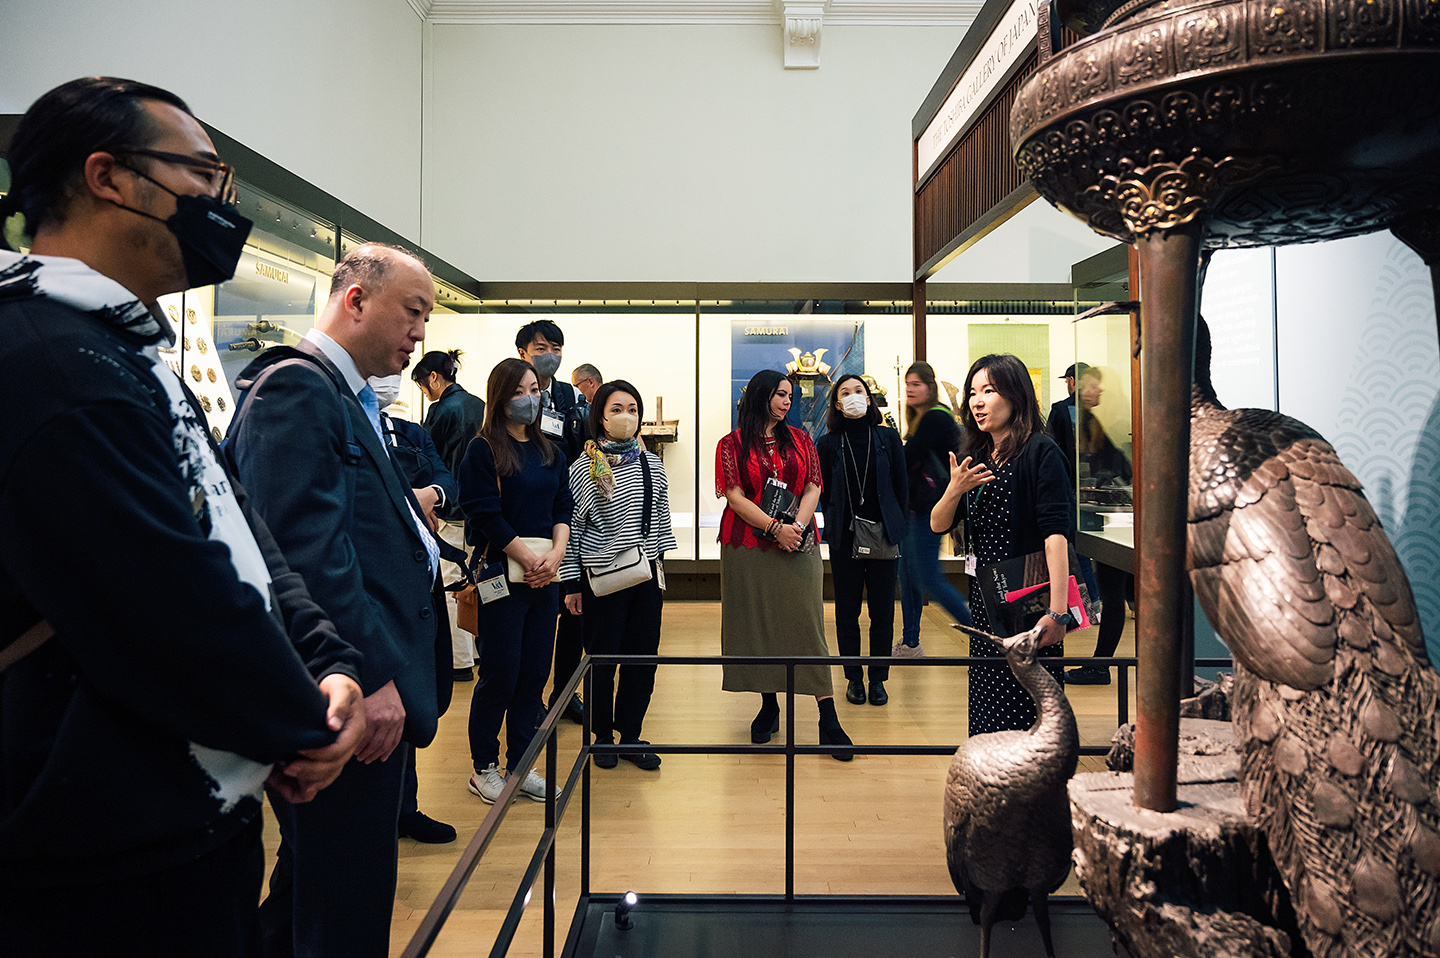 (Vol. 1) Retour sur l’évènement artistique Masterclass : Tokyo Crafts, une collaboration du Projet Edo-Tokyo Kirari, de la métropole de Tokyo, avec le Musée Victoria and Albert, à Londres